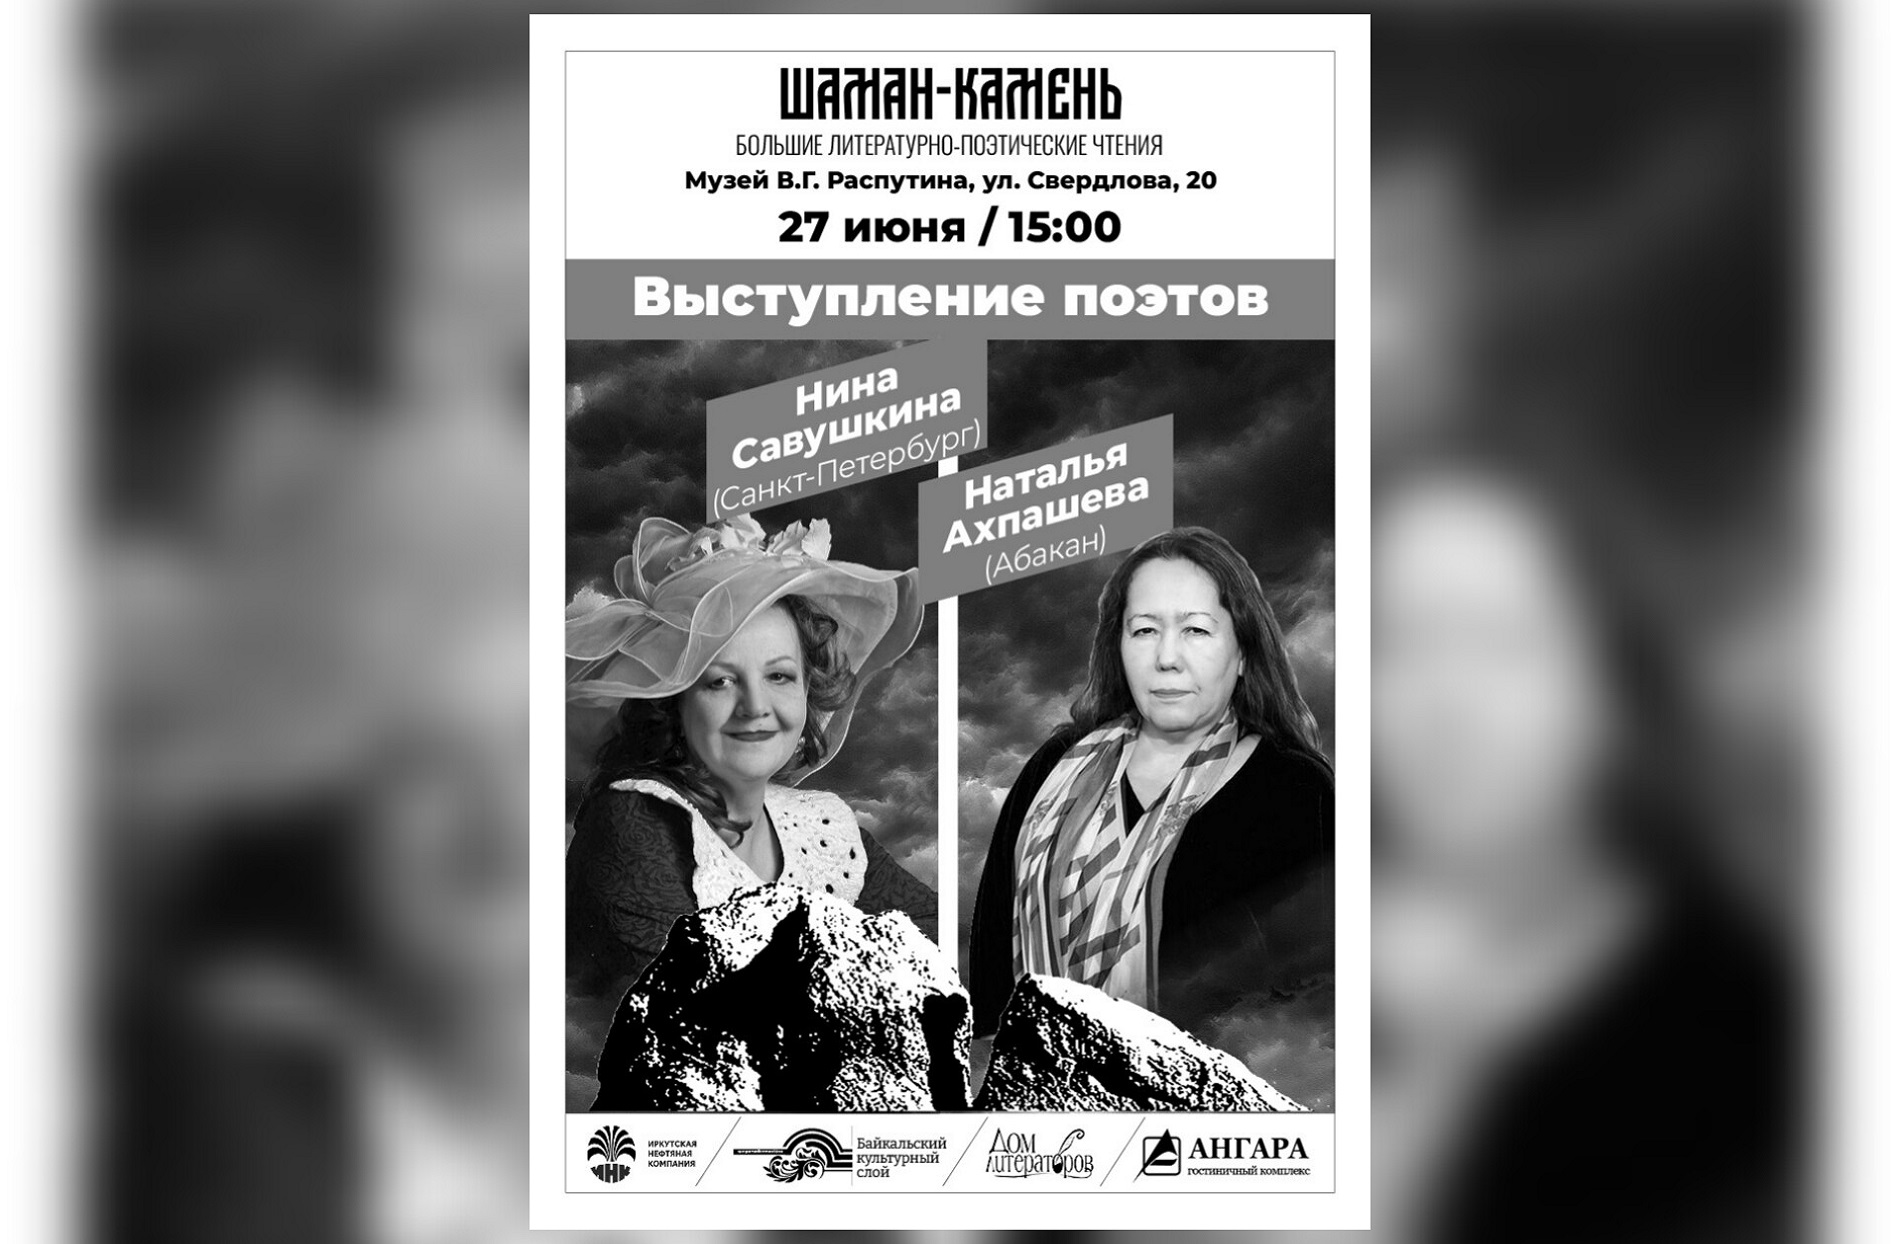 Приглашаем 27 июня на выступление поэтов Нины Савушкиной и Натальи Ахпашевой